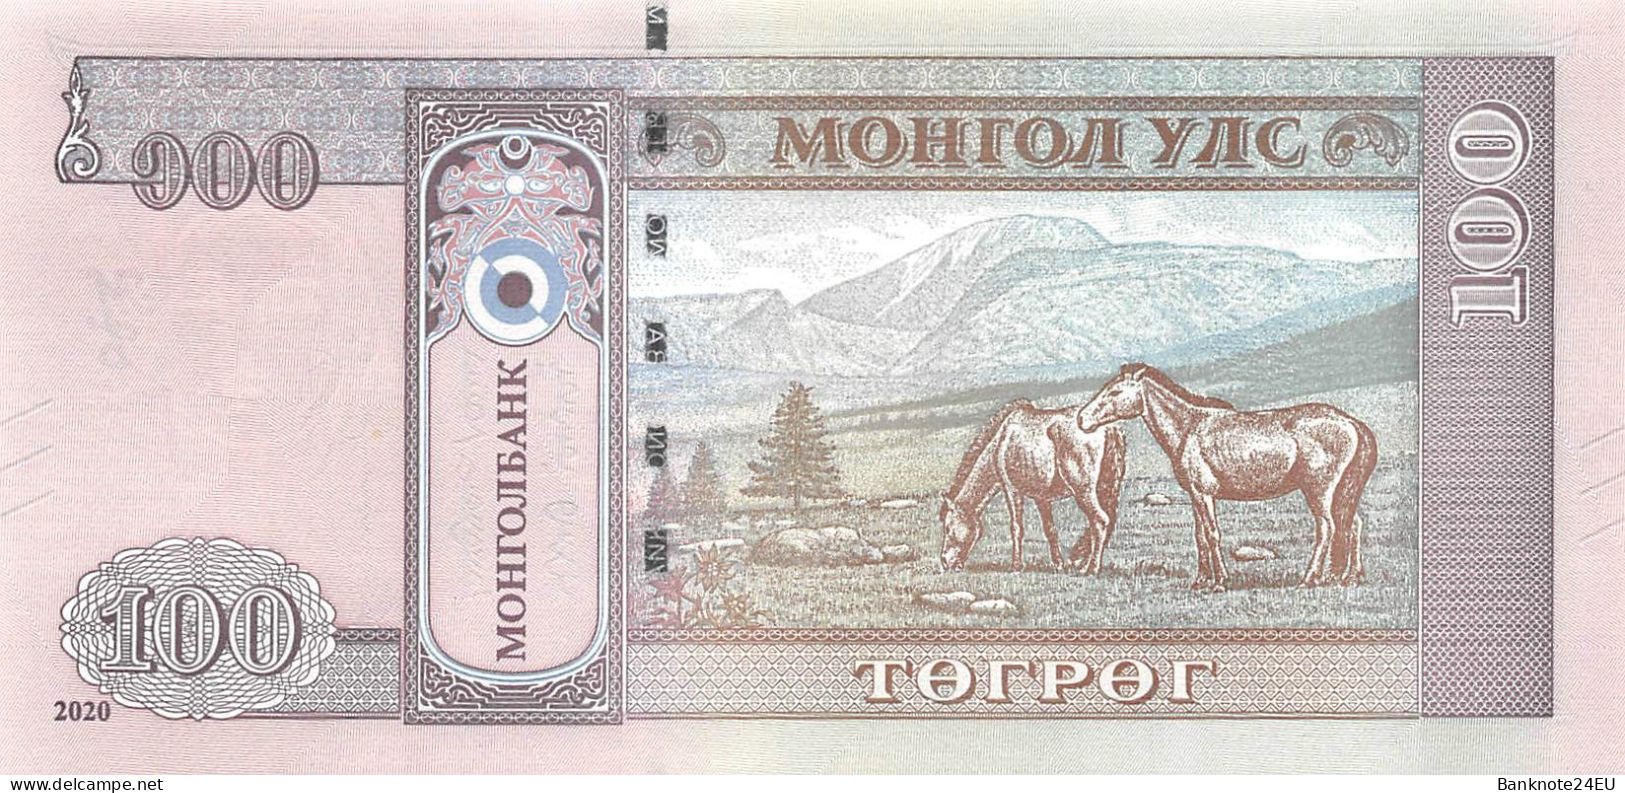 Mongolia 100 Togrog 2020 Unc Pn 73a - Mongolia